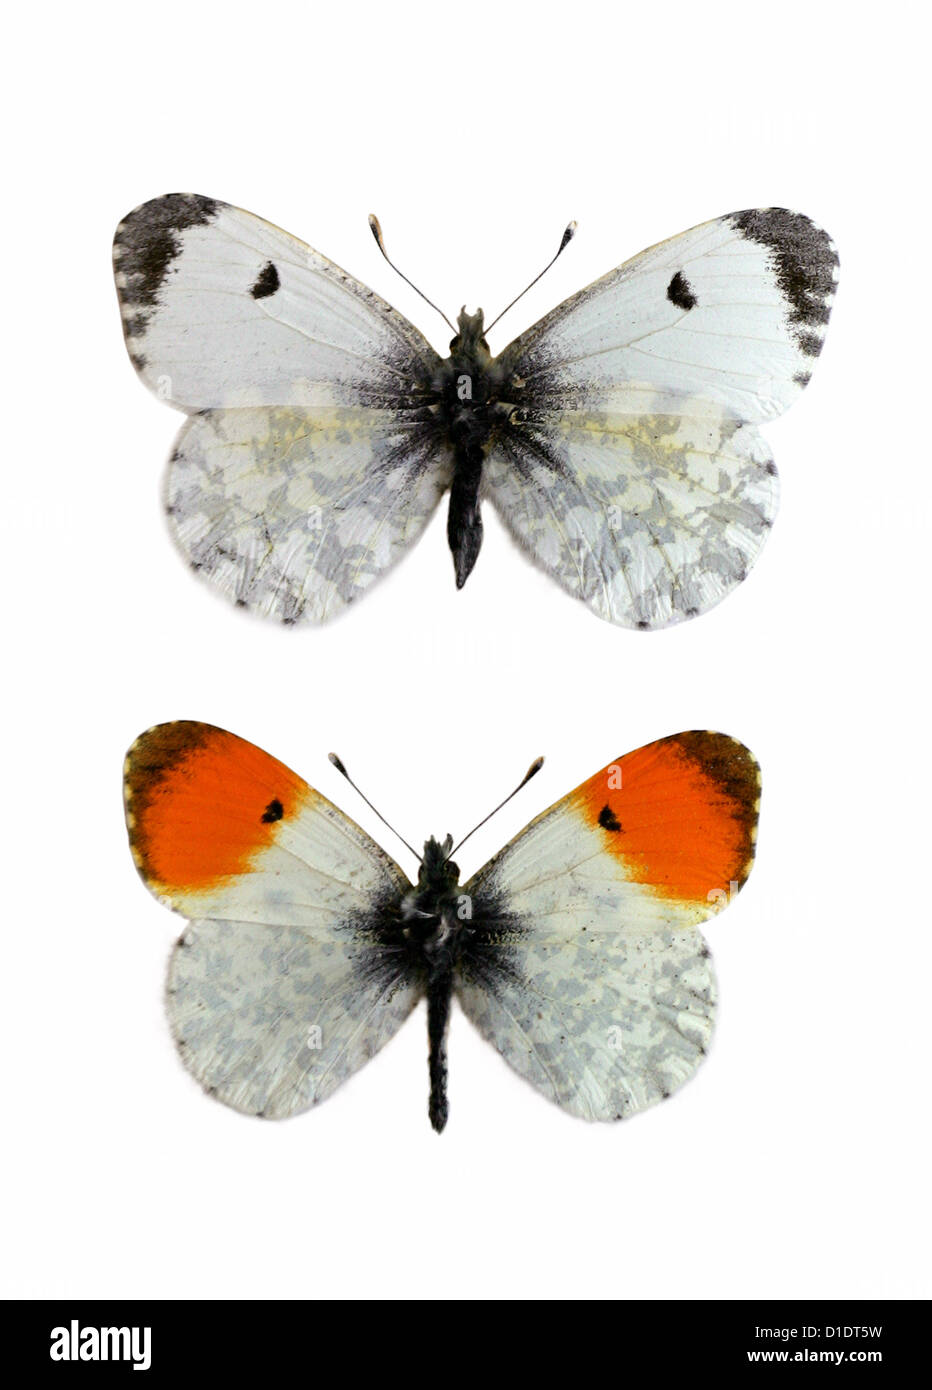 Naranja de punta de mariposas, Anthocharis cardamines, Pieridae, Lepidoptera. Hembra (parte superior), en varones (parte inferior). Especímenes montados. Recorte. Foto de stock